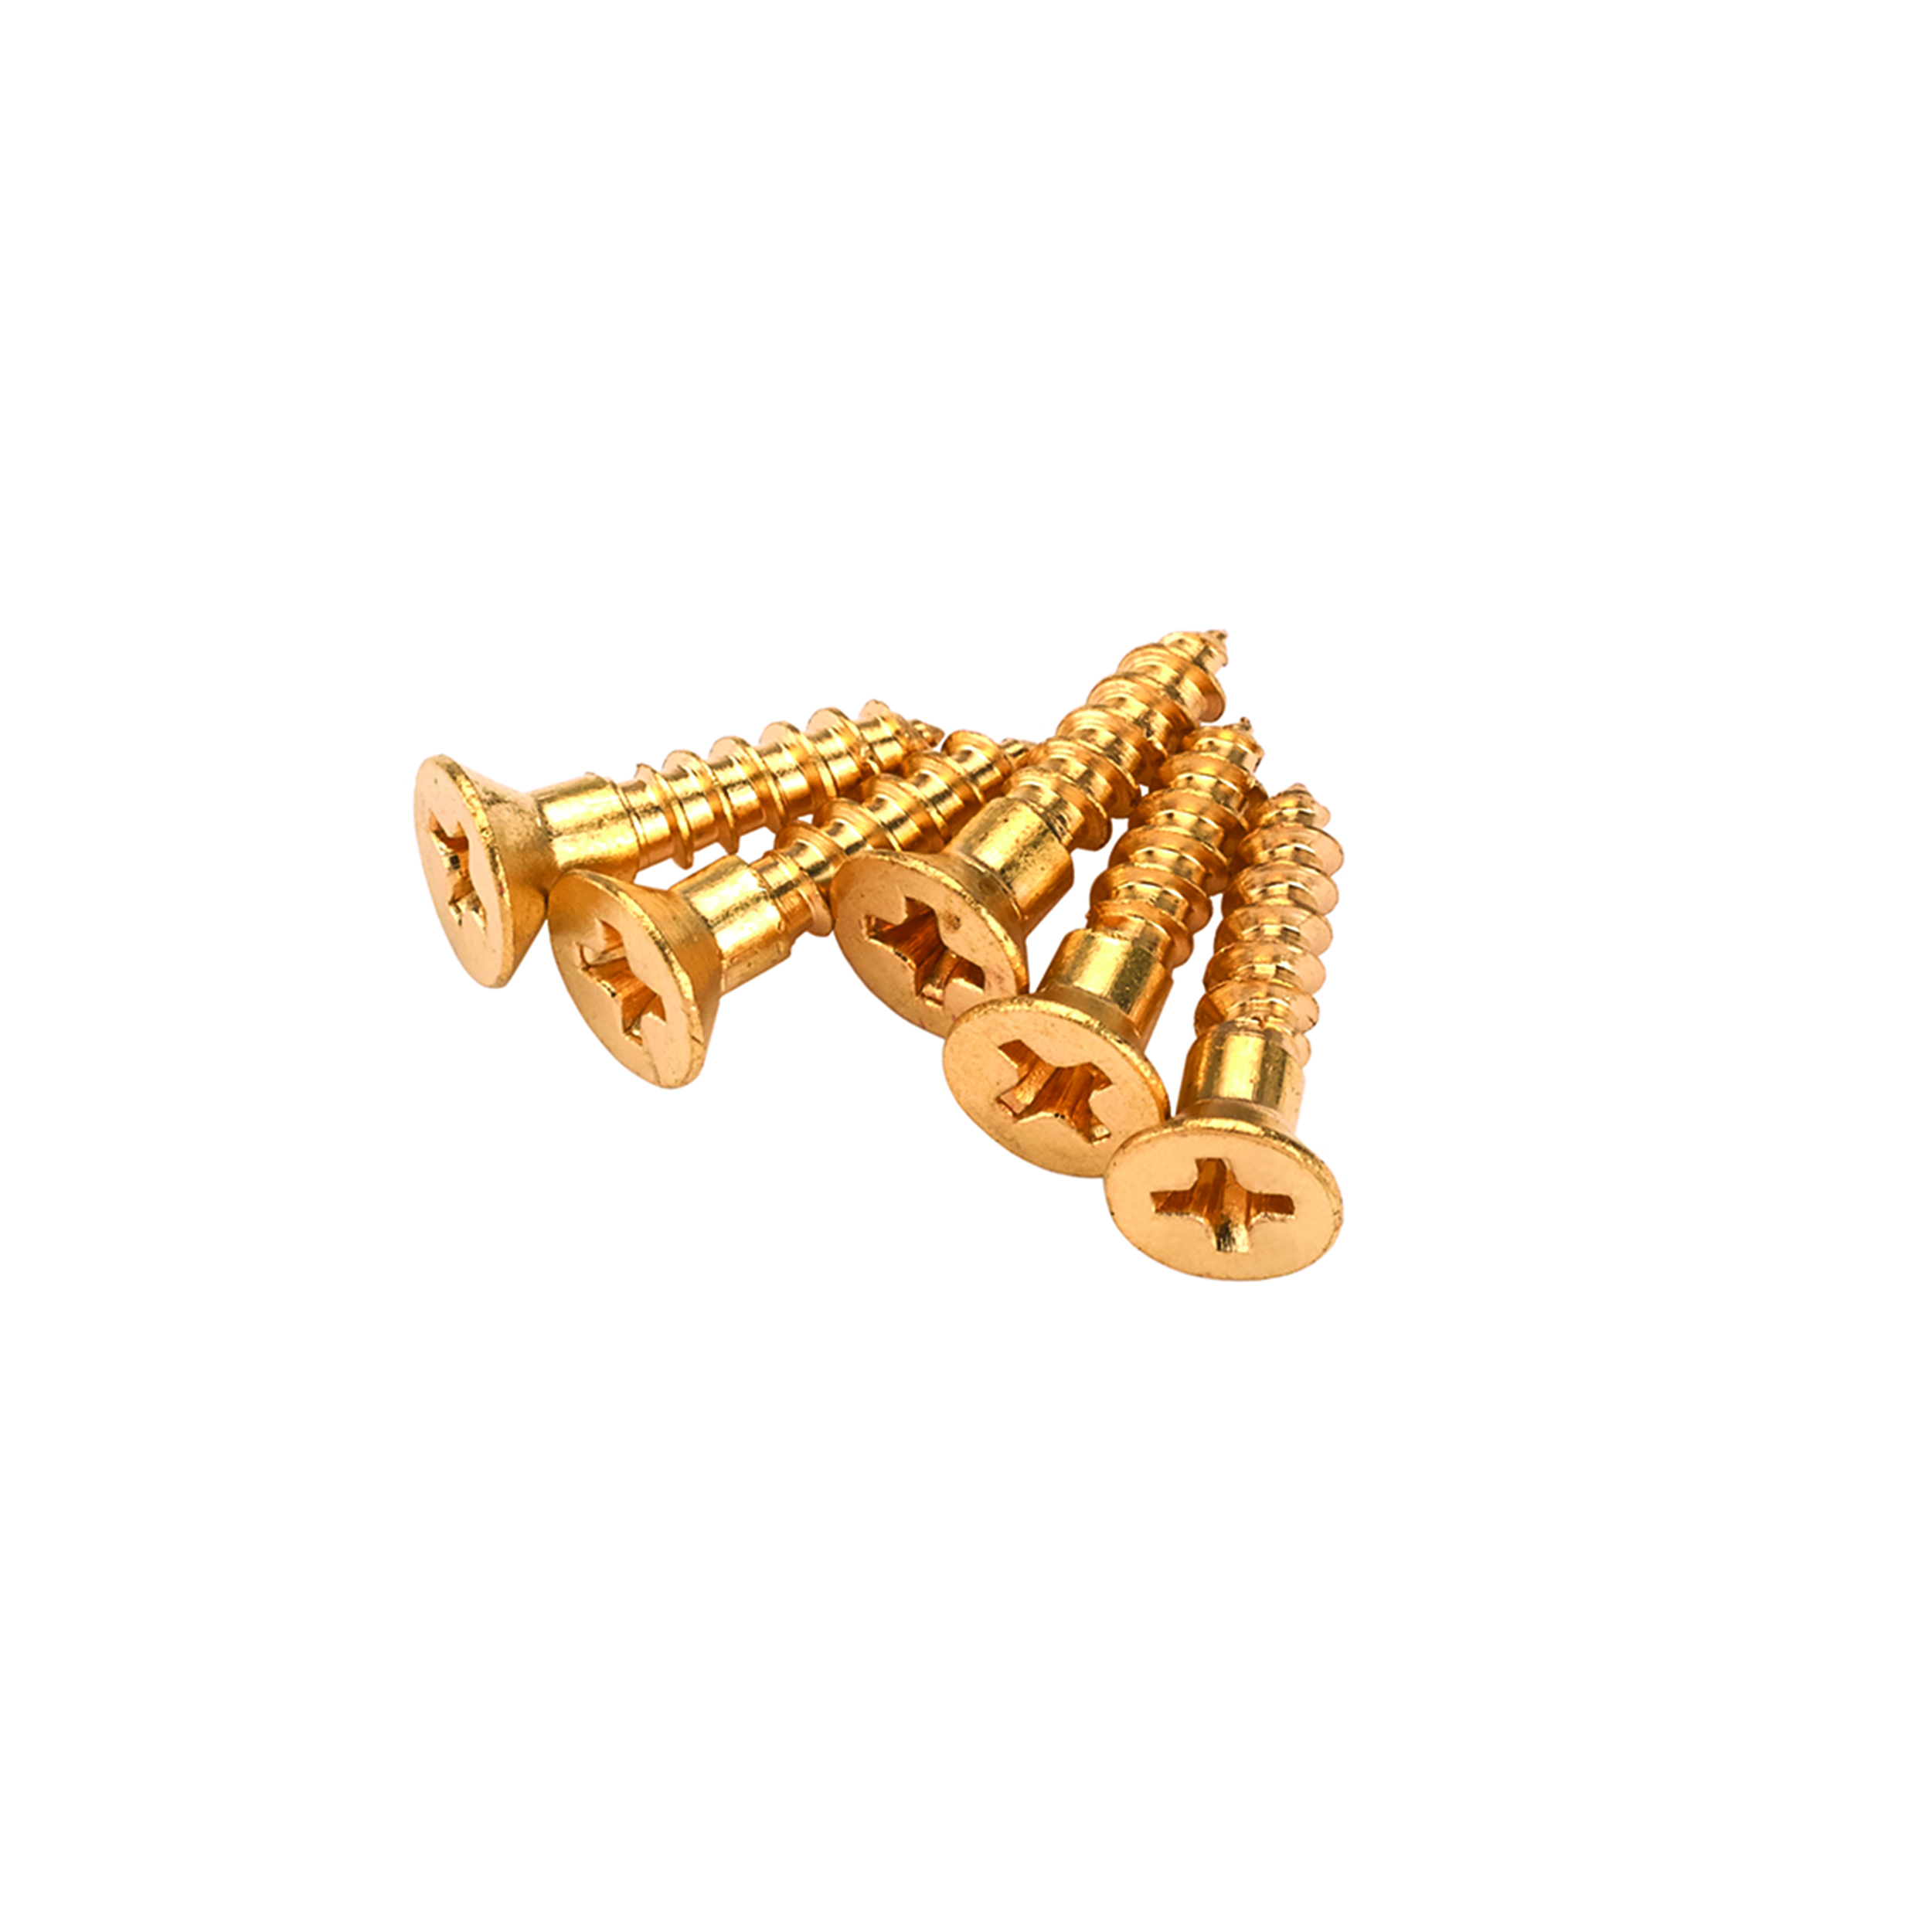 Solid Brass Screws #2 X 1/2" Phillips 25-piece